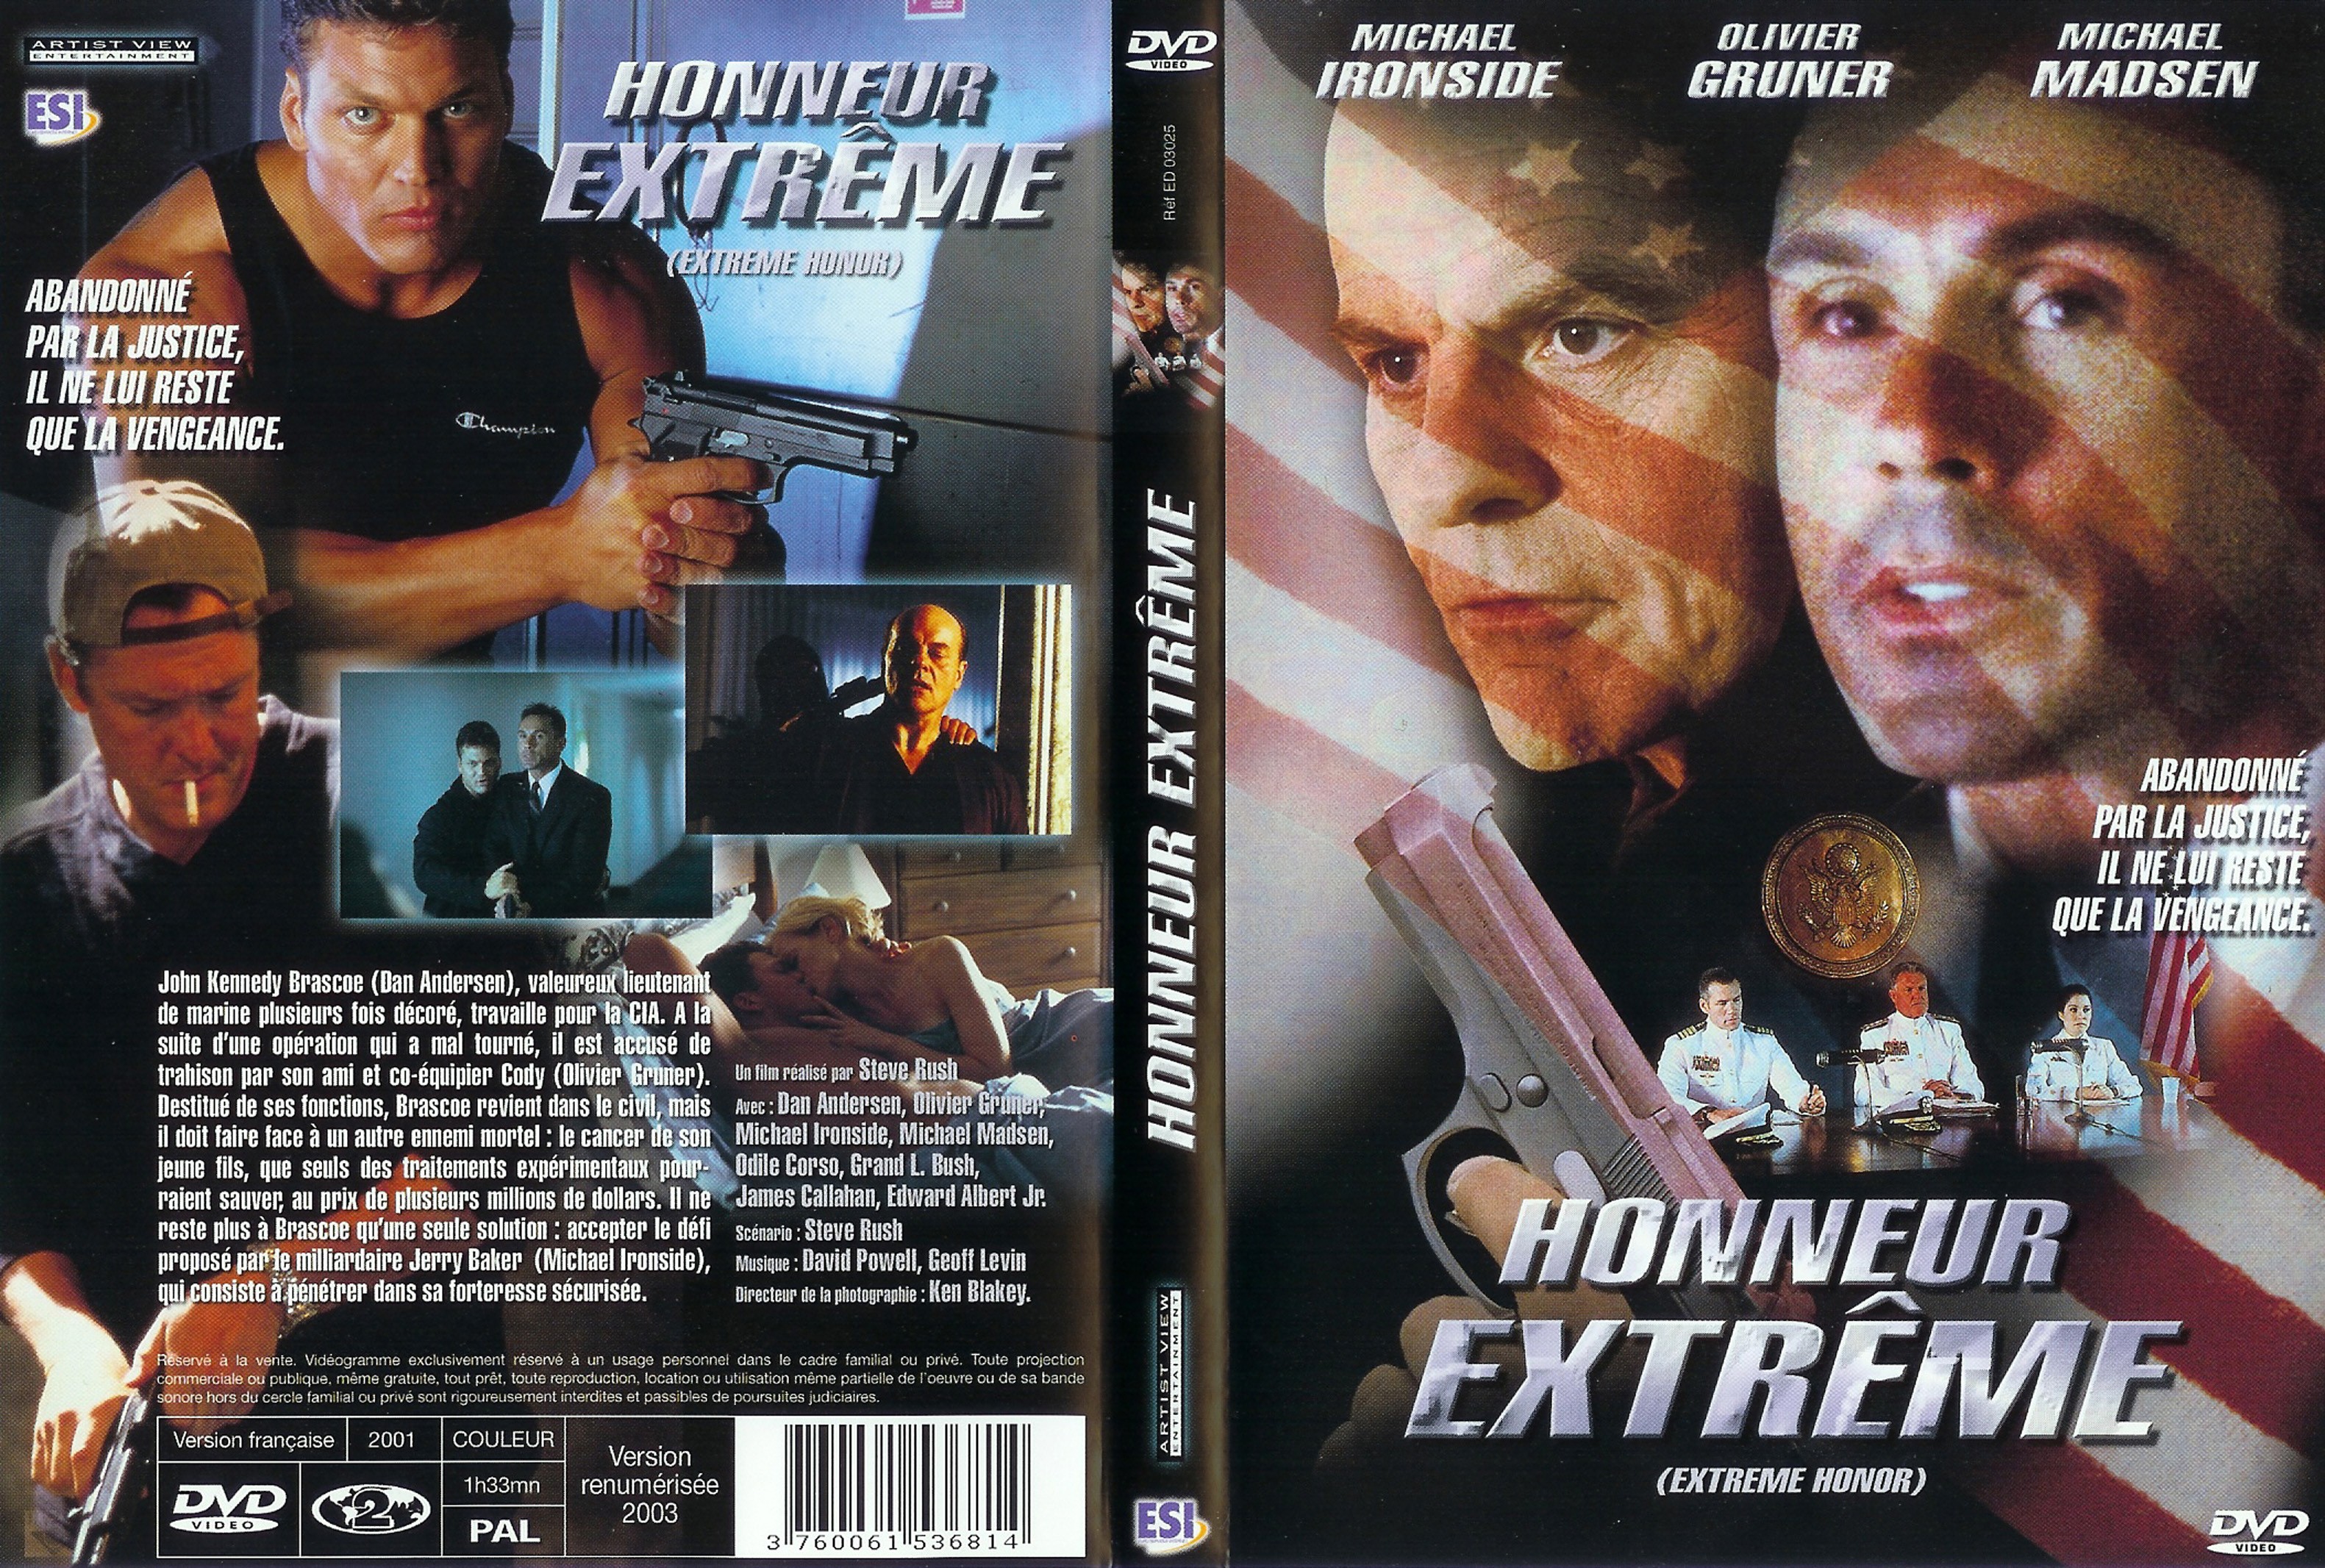 Jaquette DVD Honneur extreme